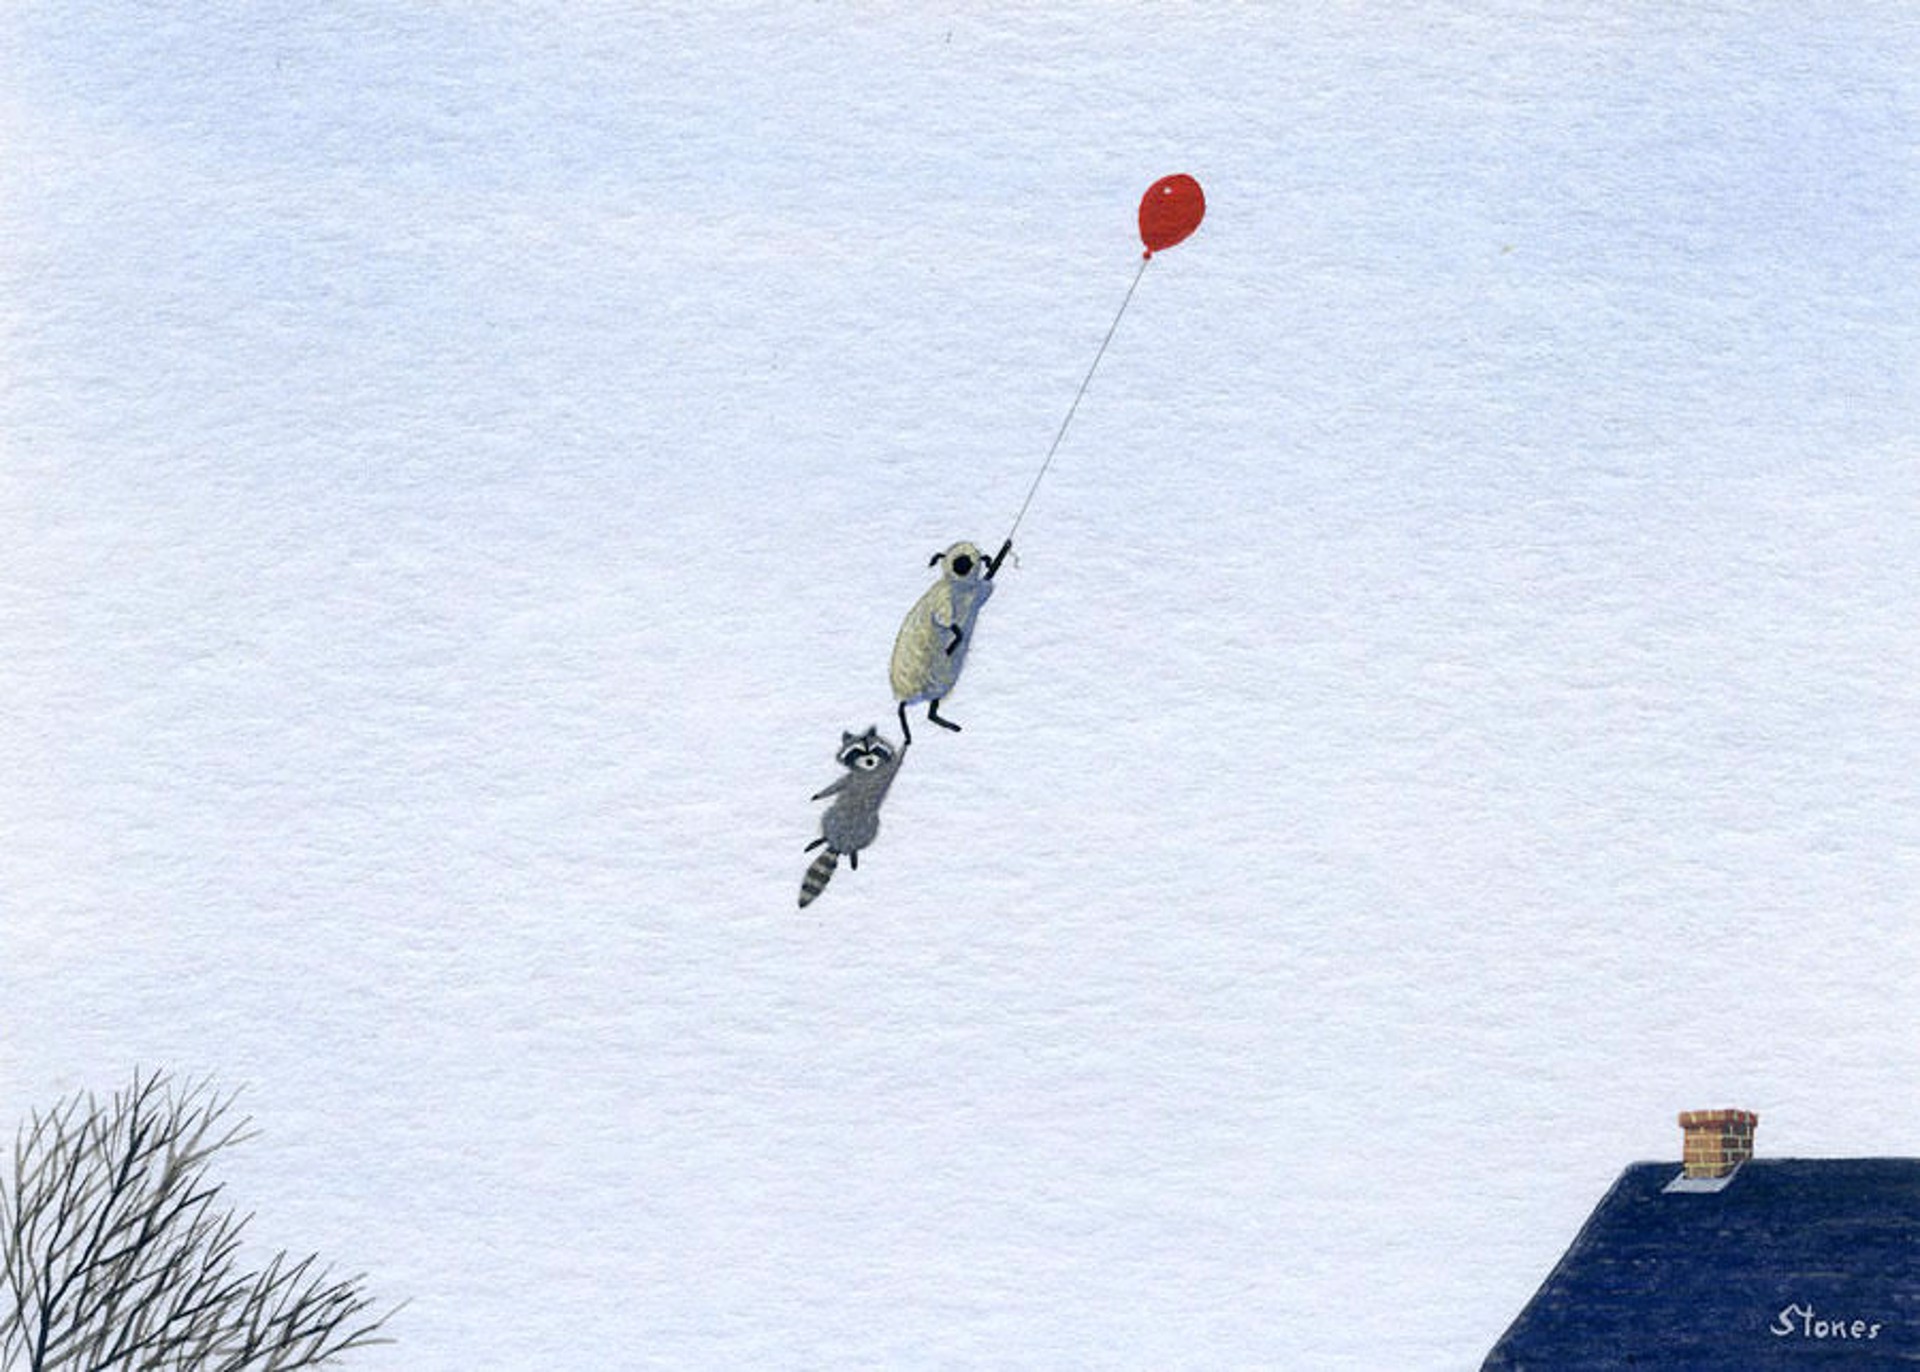 Sheep, Raccoon, Balloon by Greg Stones